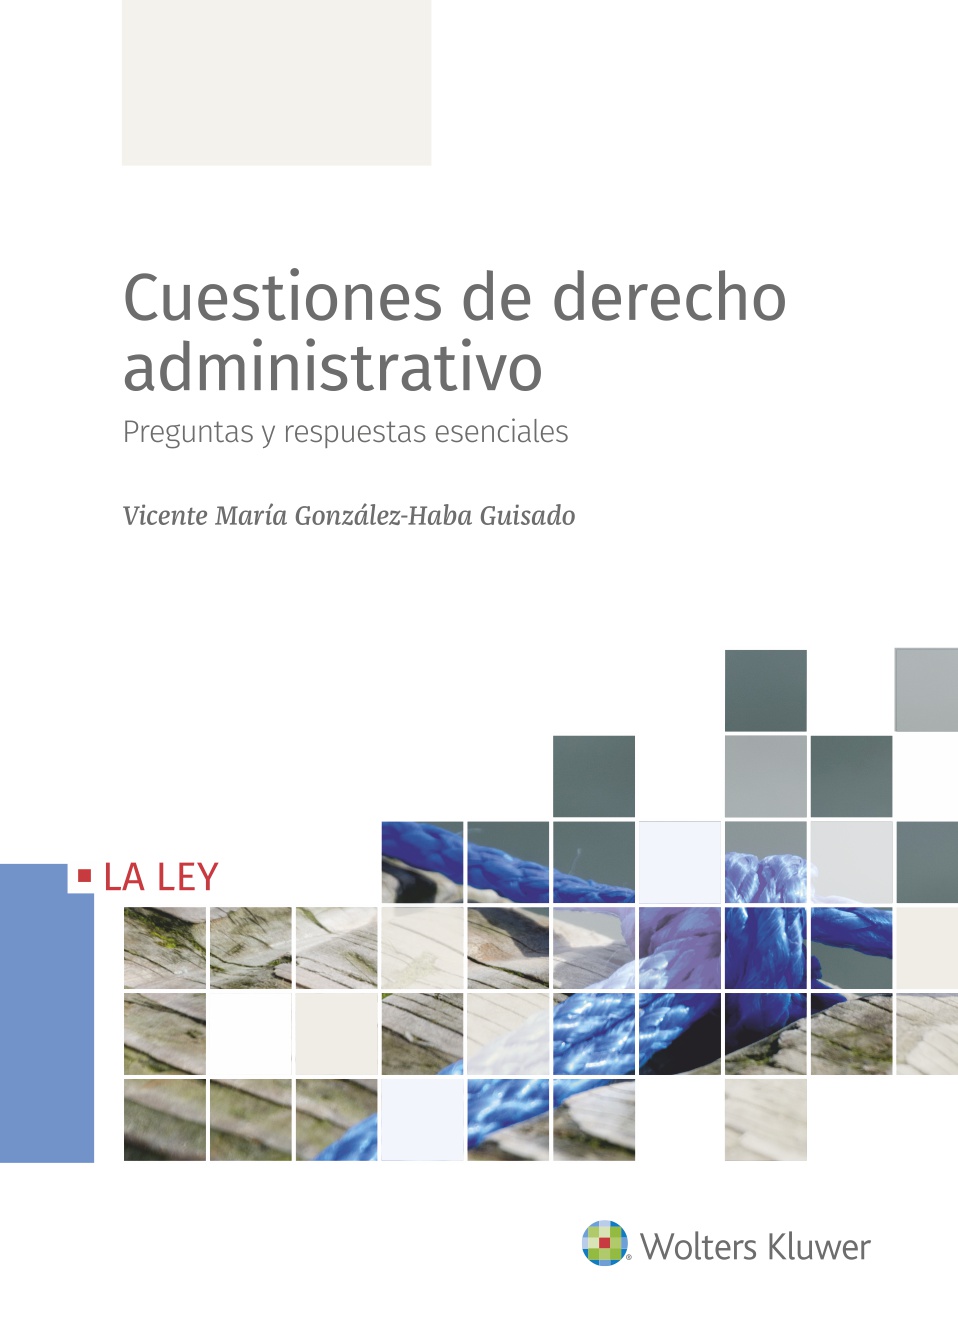 Cuestiones de Derecho Administrativo   «Preguntas y respuestas esenciales»